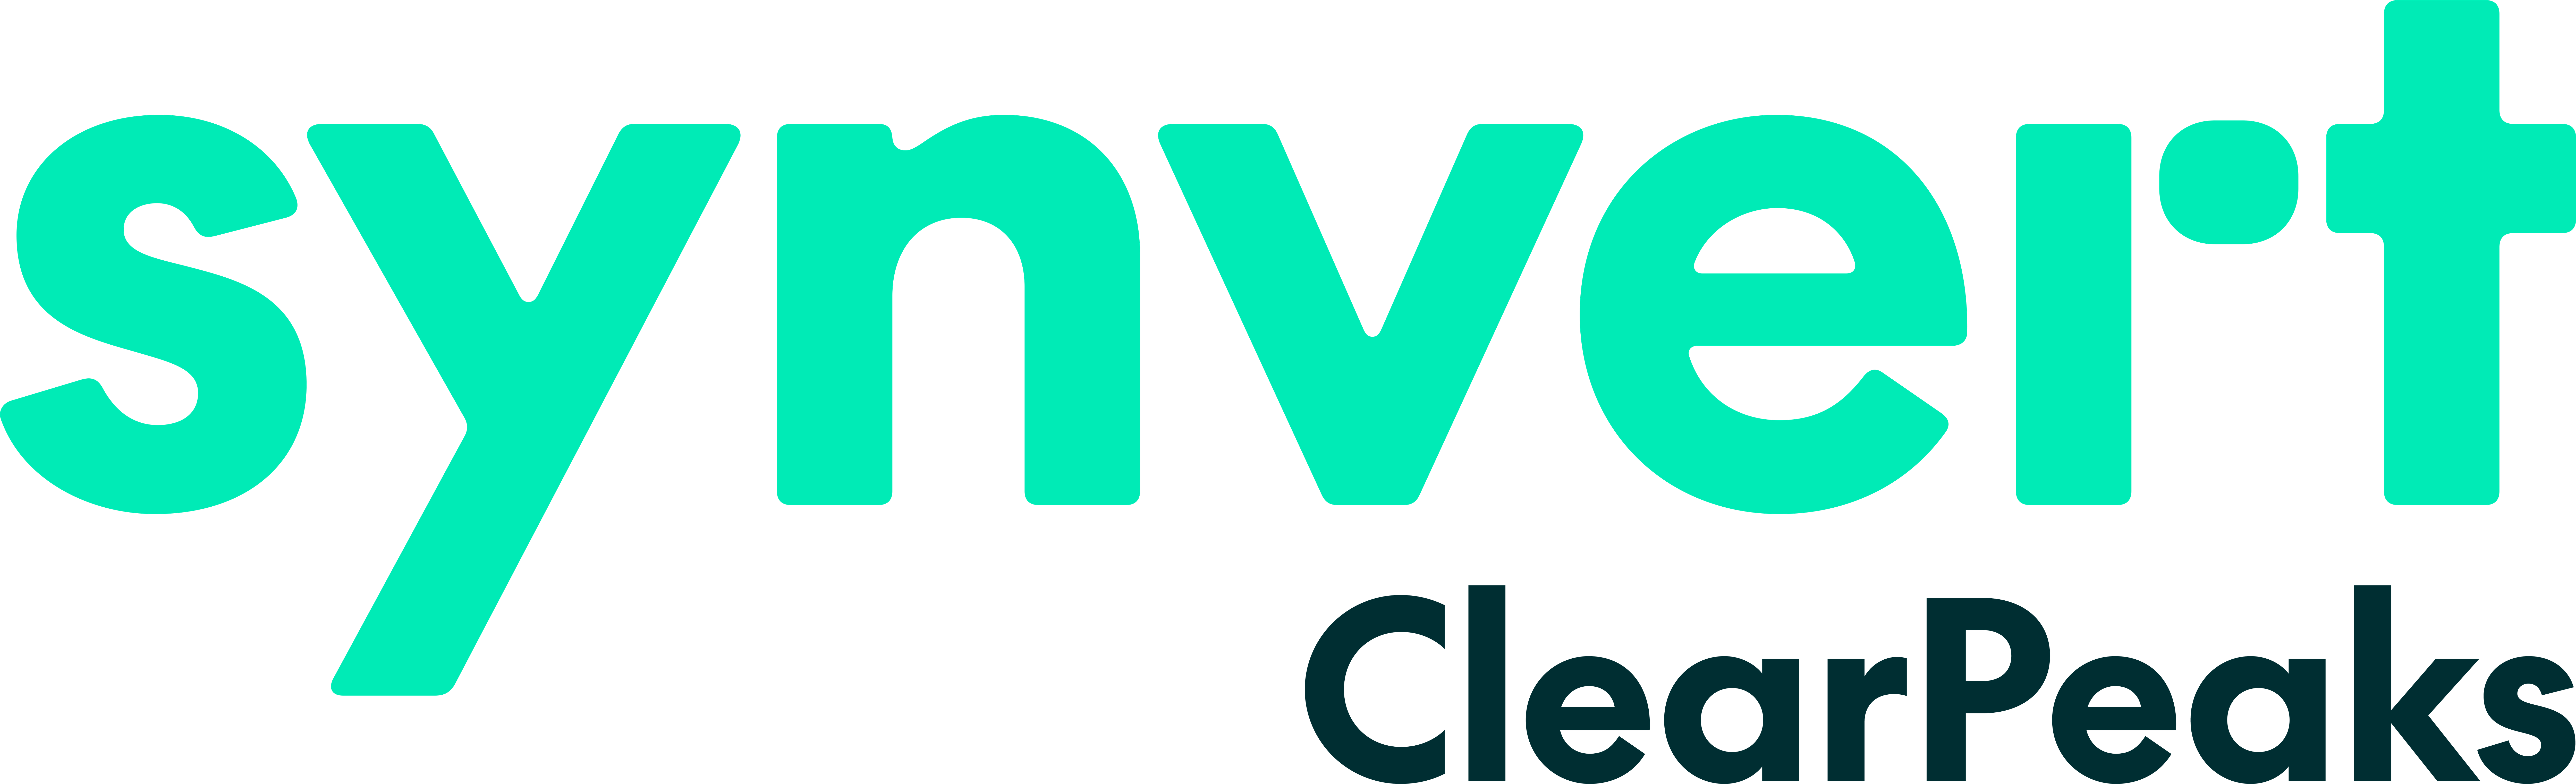 Clearpeaks logo